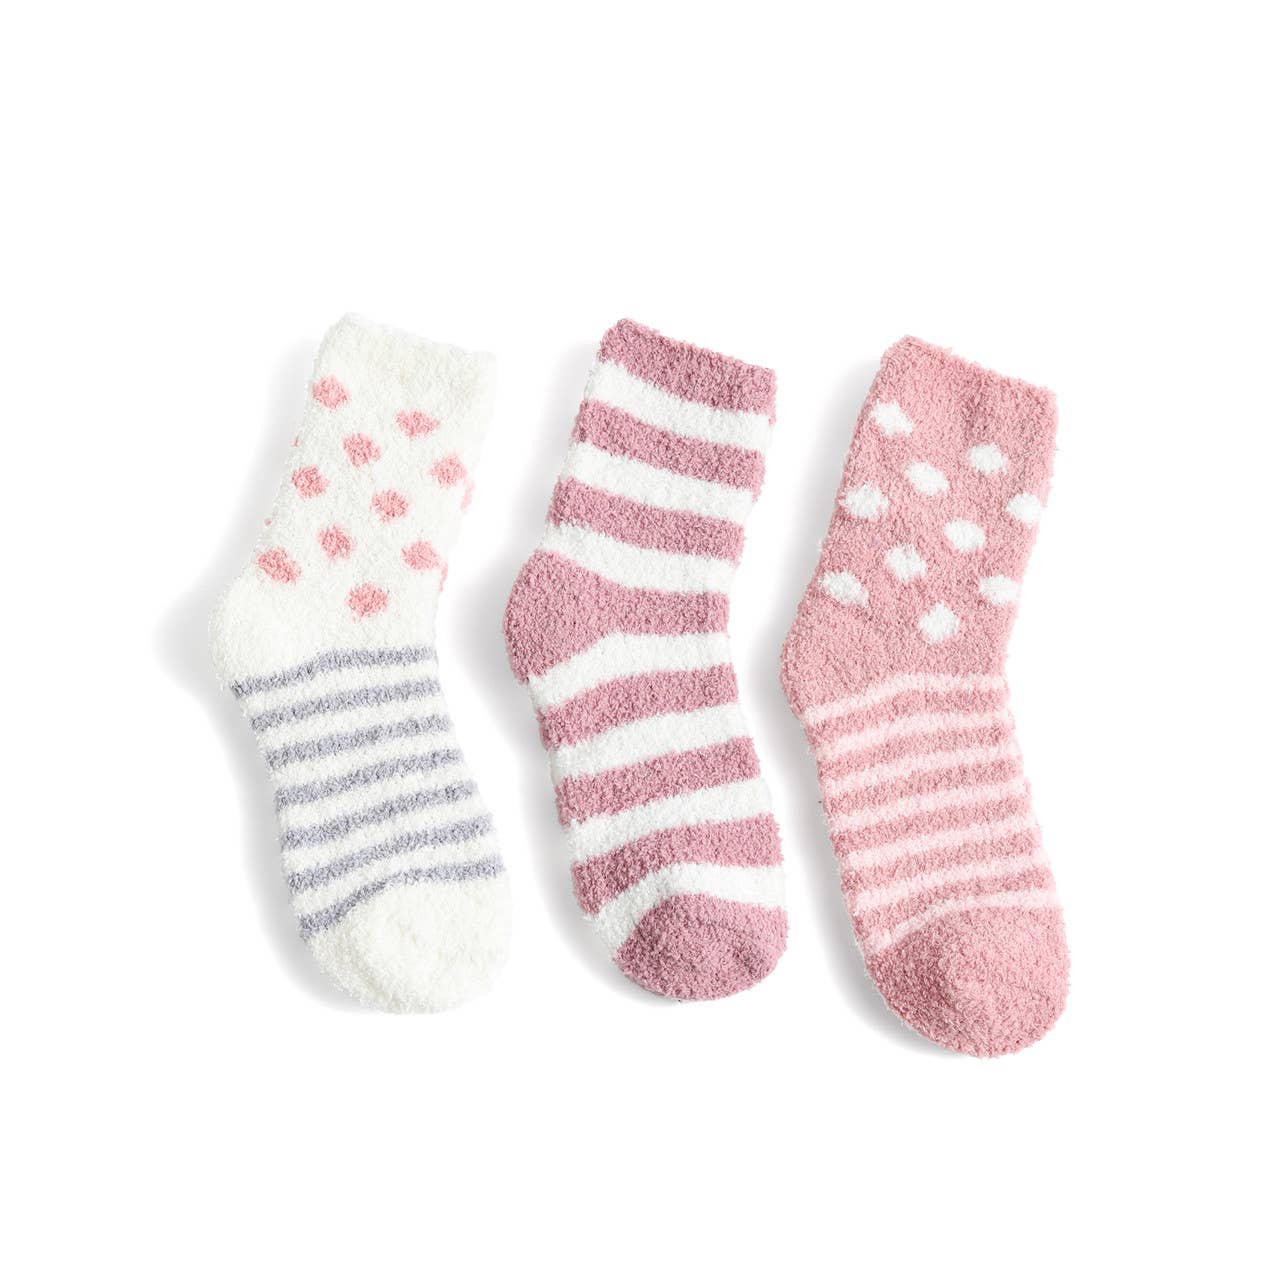 Ladies Fuzzy Socks - 3 pair Set - Pink